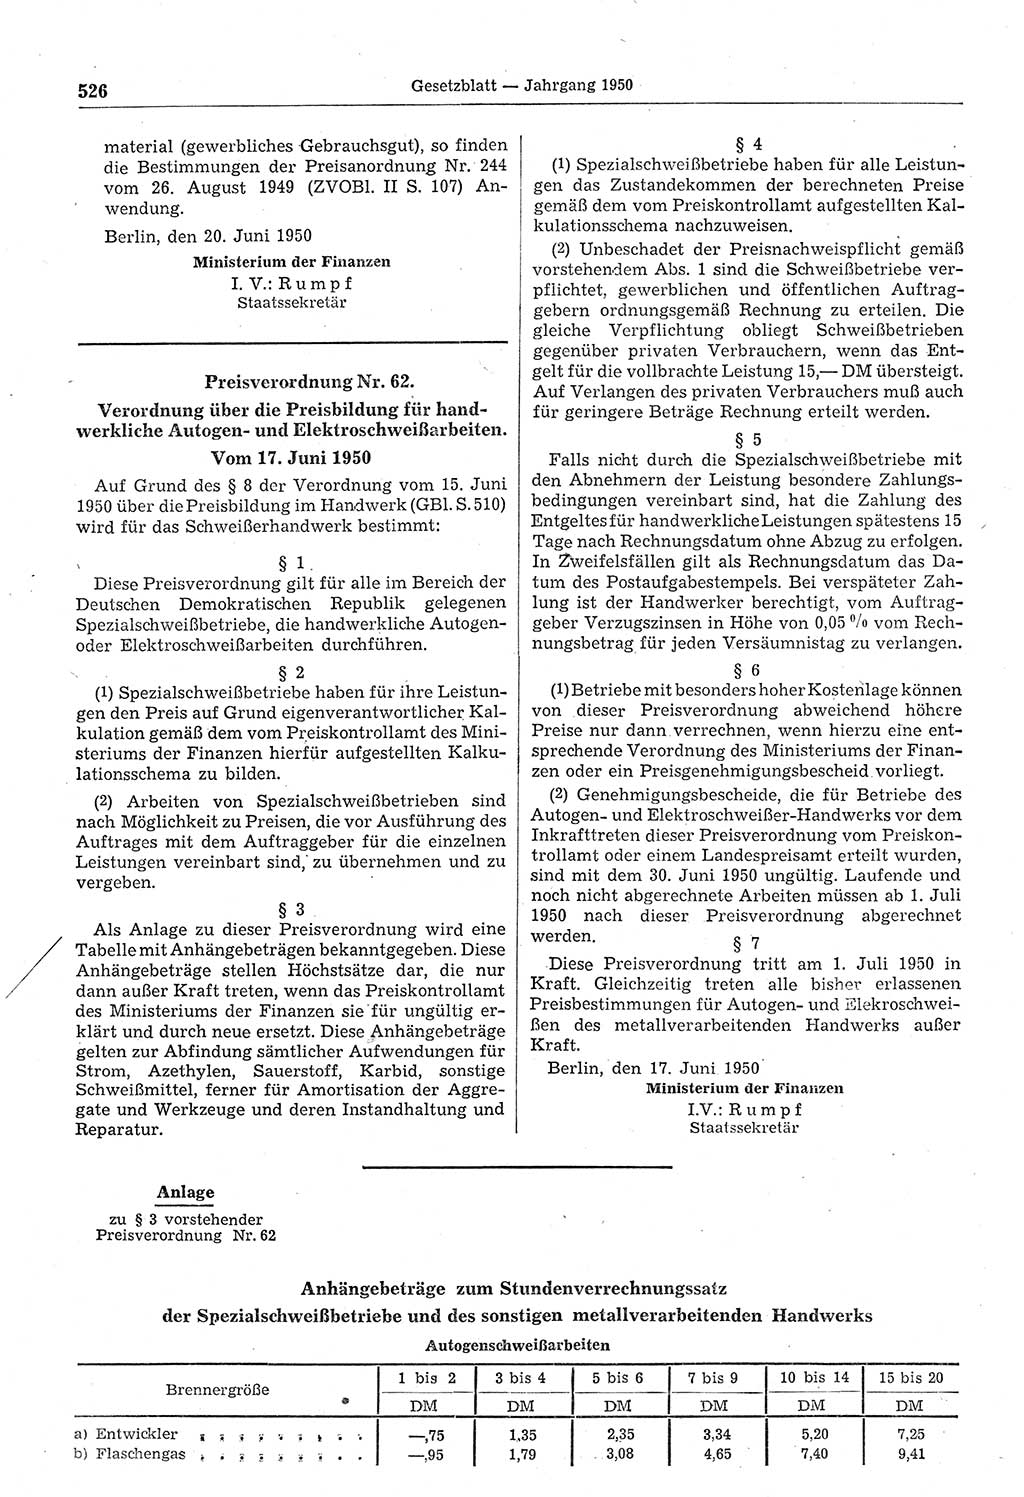 Gesetzblatt (GBl.) der Deutschen Demokratischen Republik (DDR) 1950, Seite 526 (GBl. DDR 1950, S. 526)